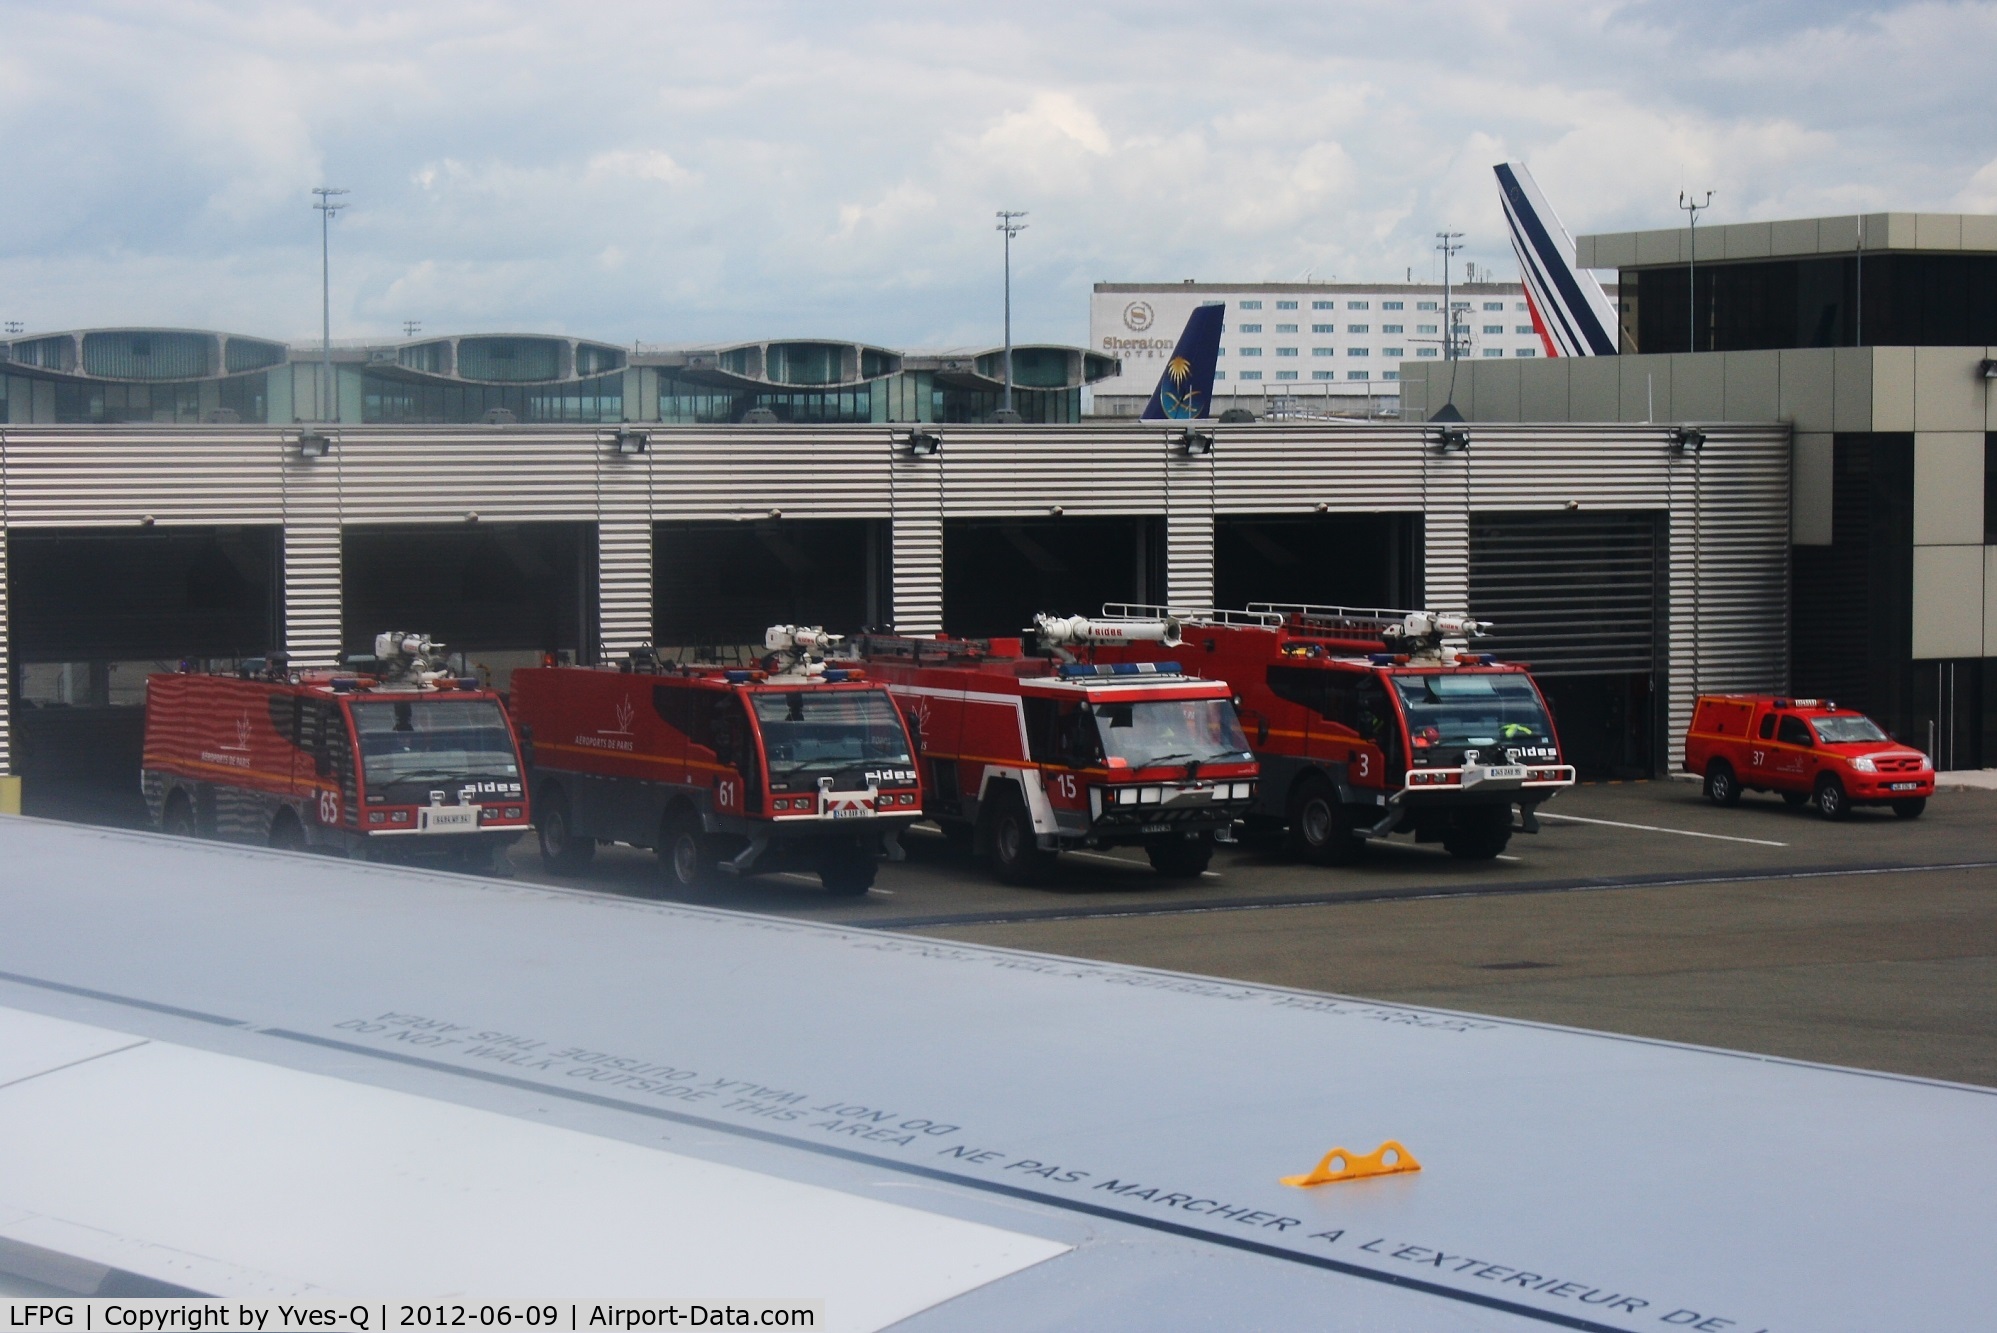 Paris Charles de Gaulle Airport (Roissy Airport), Paris France (LFPG) - South  fire trucks Center, Roissy Charles De Gaulle airport (LFPG-CDG)